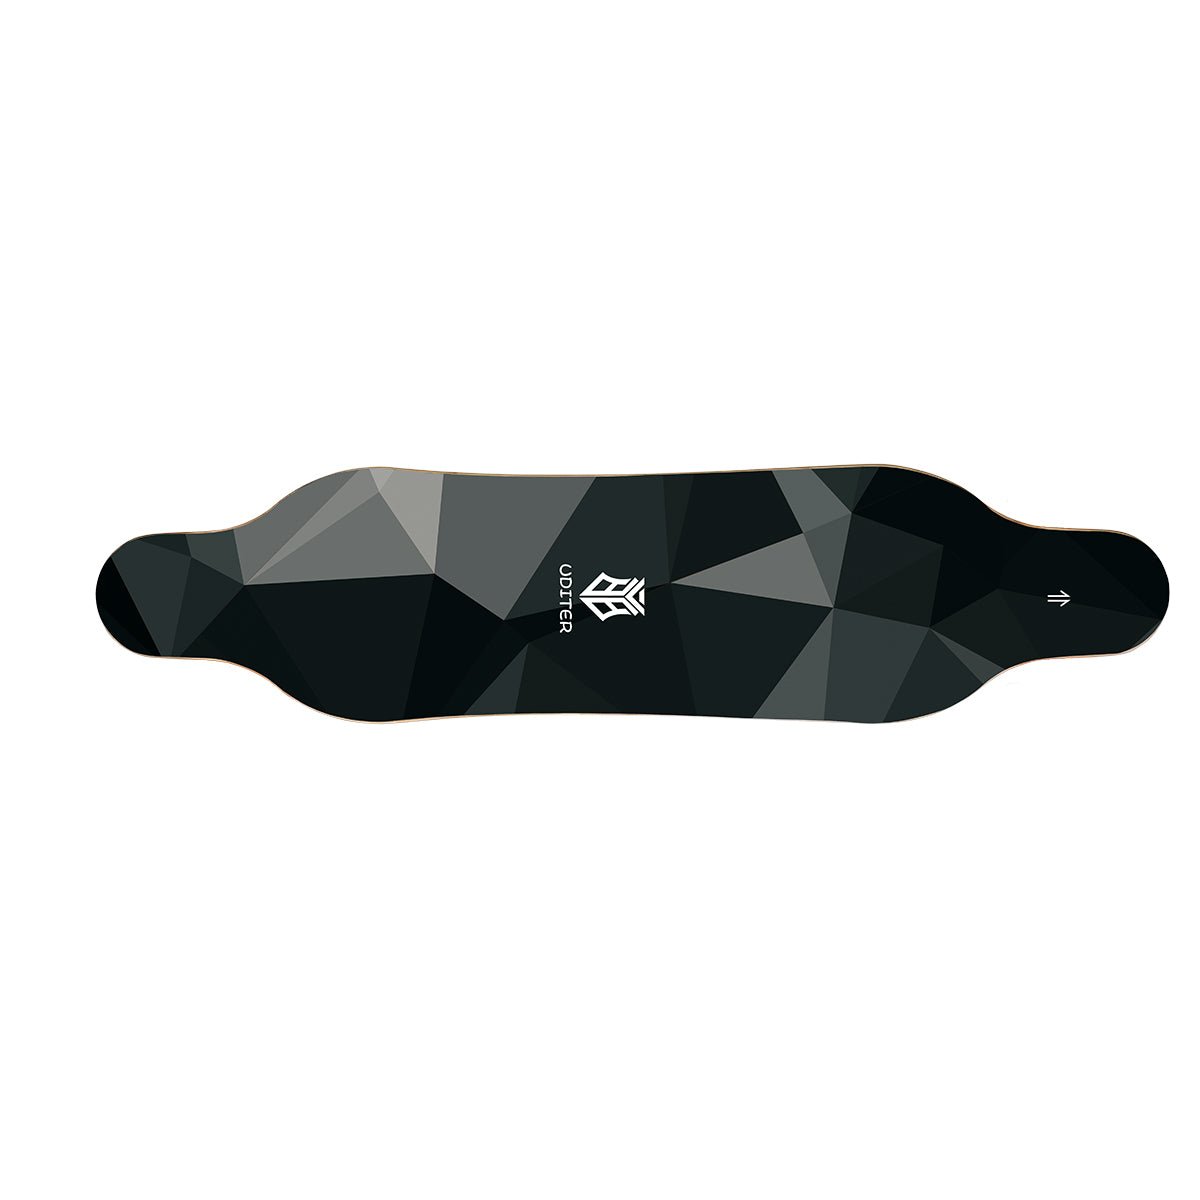 Electric Skateboard Deck For S3/S3 PRO - Uditerboard